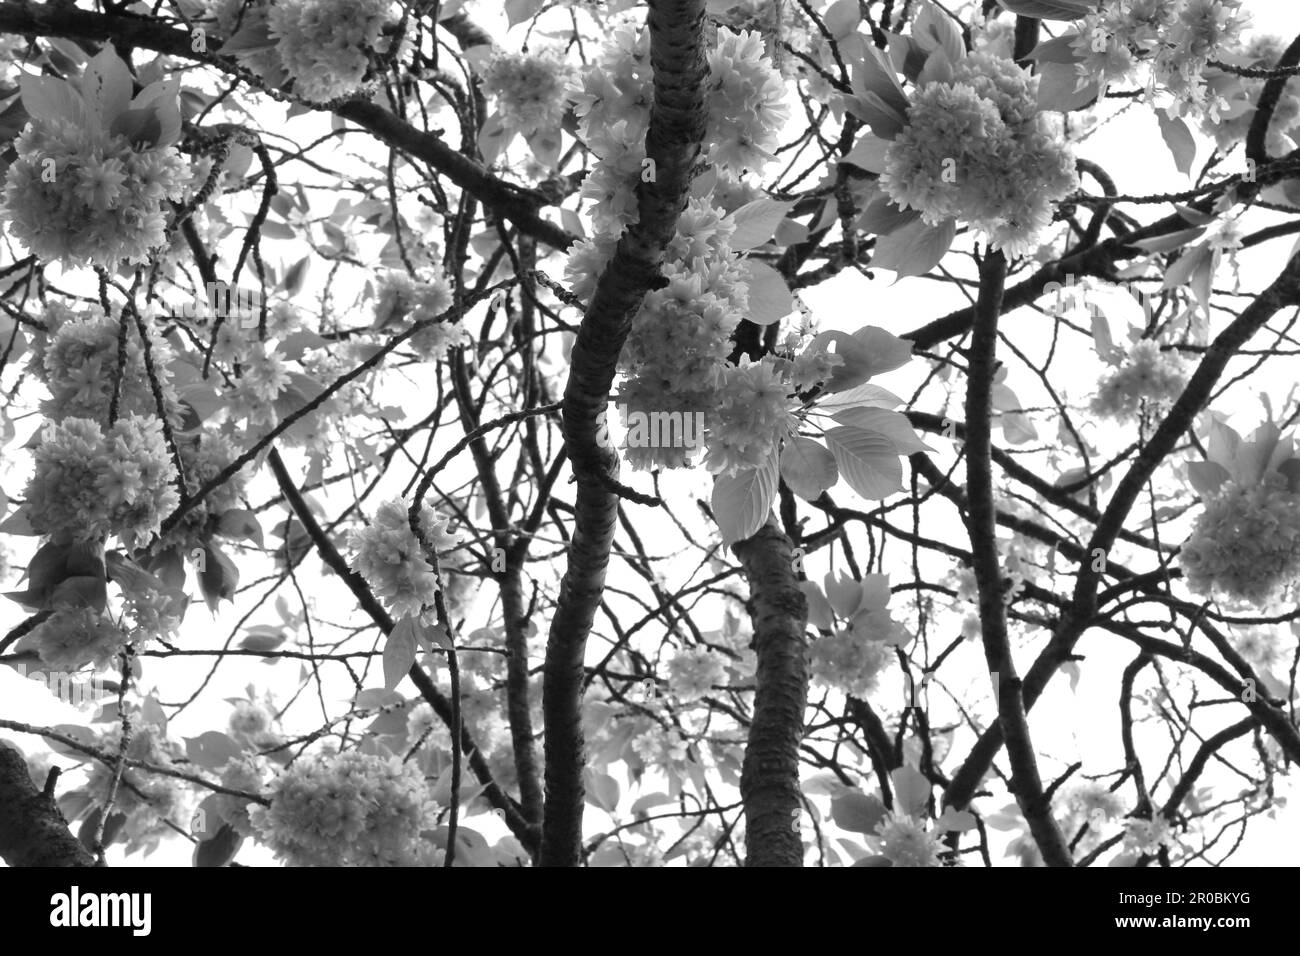 Tree in bloom black & white Stock Photo